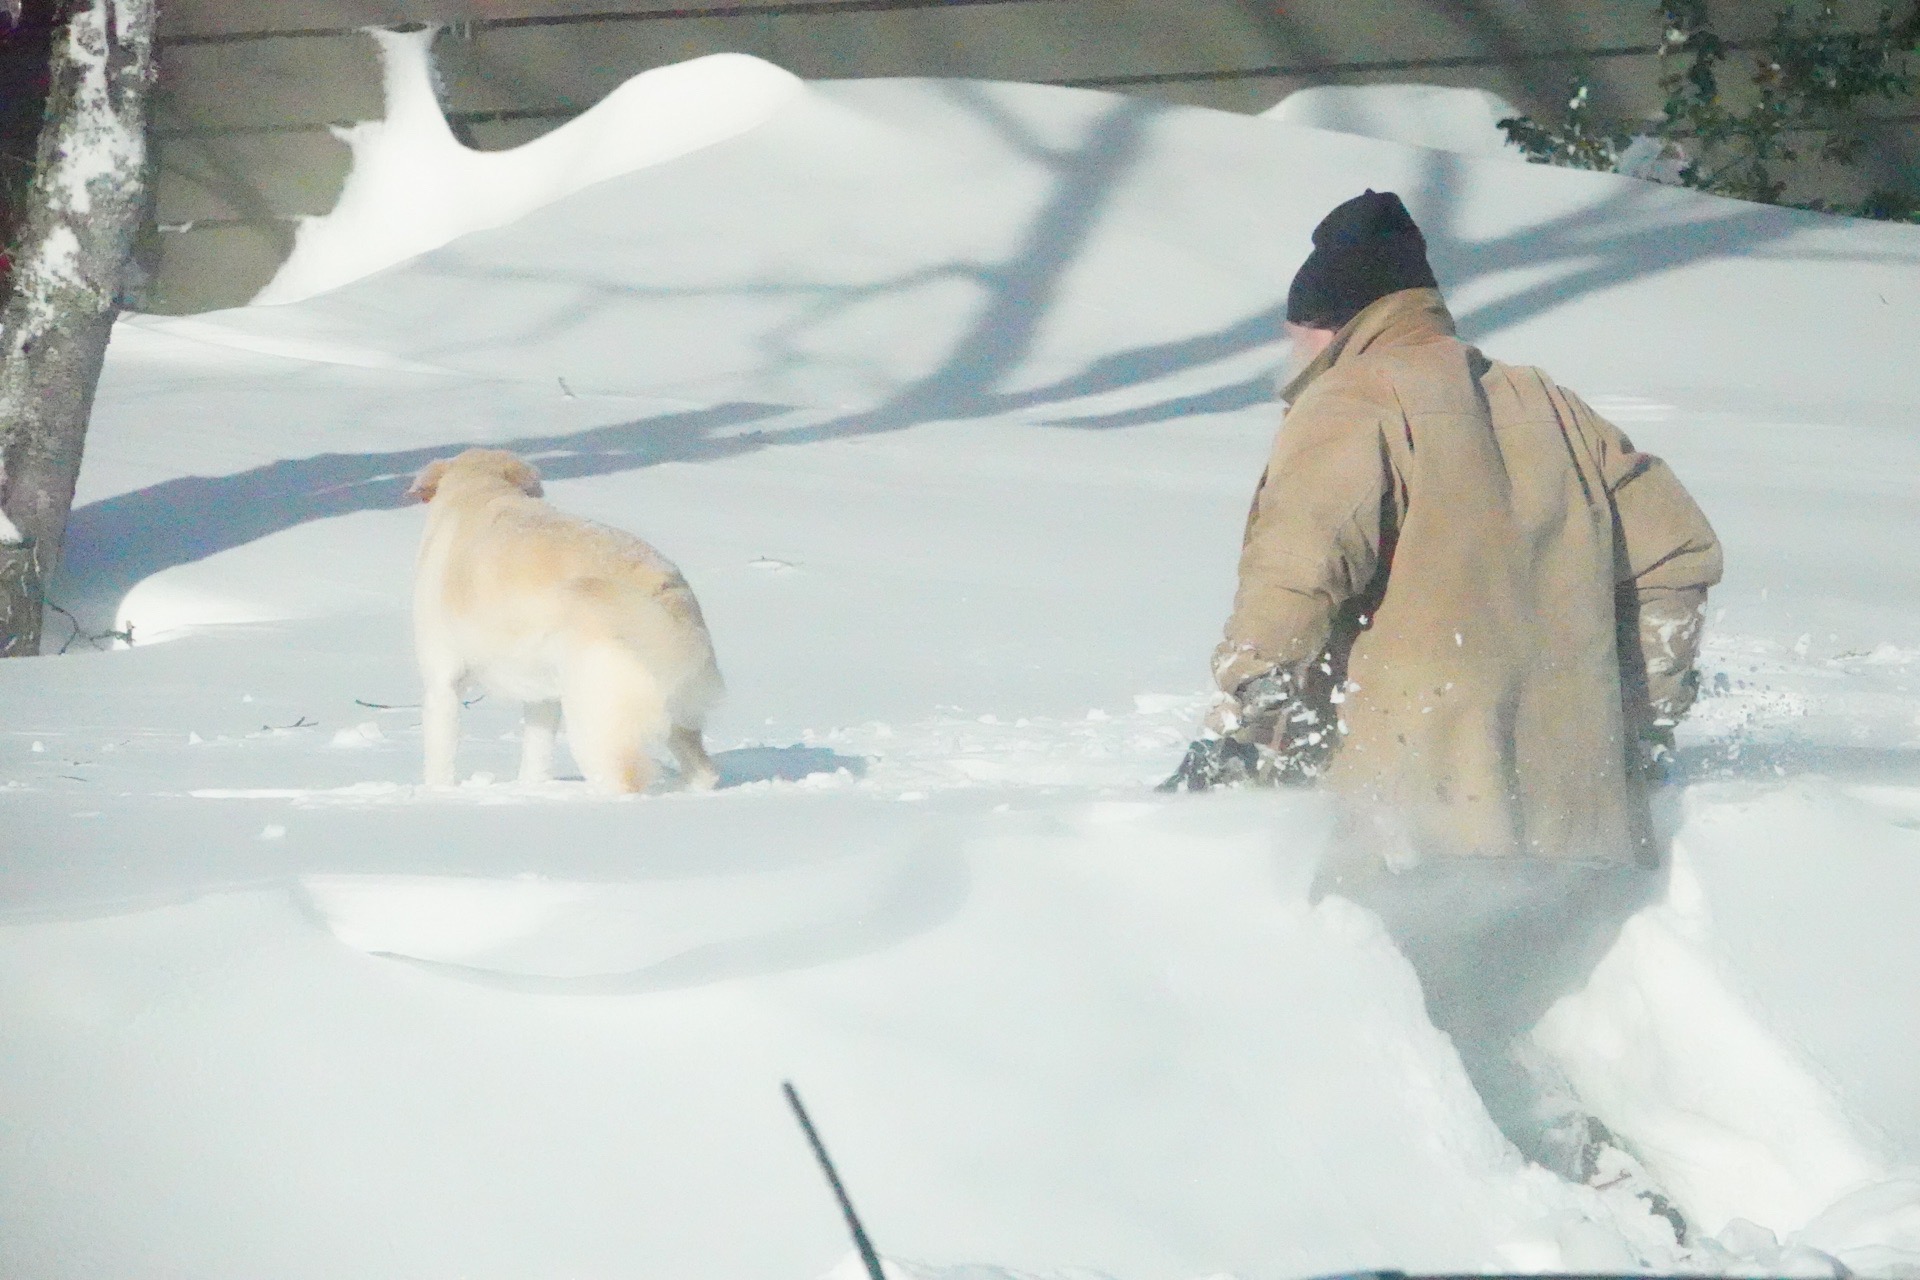 #好大的雪# 大雪过后，一片雪白的世界；街上人很少，温度依然在零下。忽然看到一位老爷爷牵着狗狗，从家